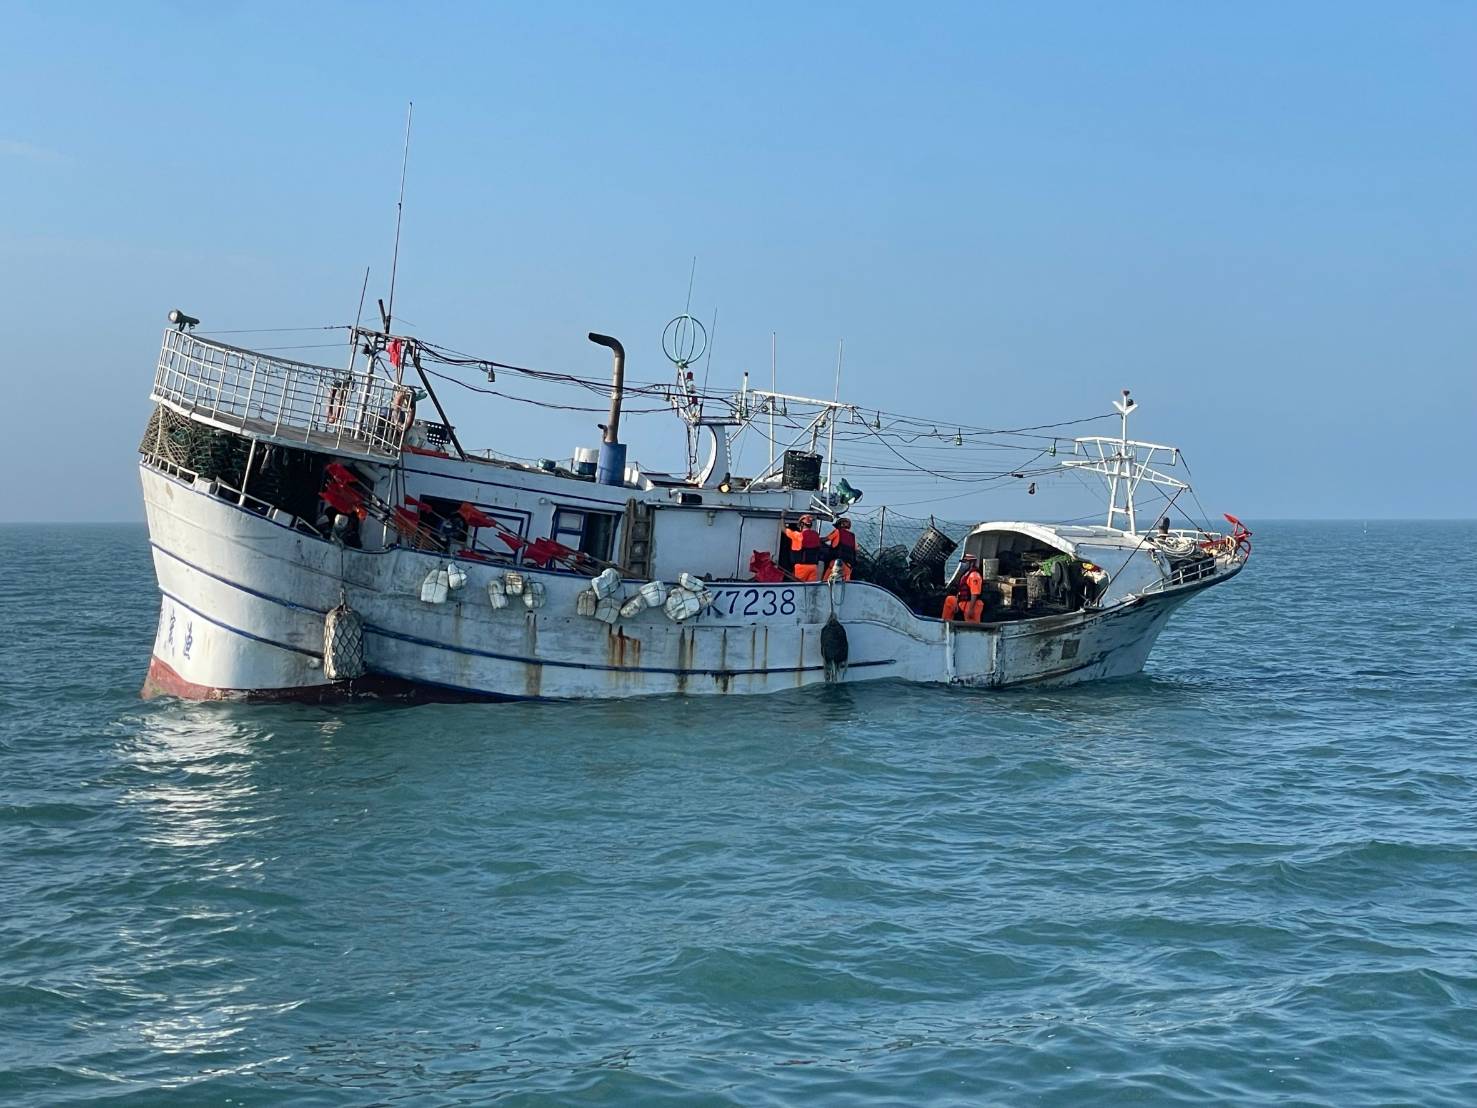 漁船違規佈放籠具 布袋海巡隊蒐證送罰